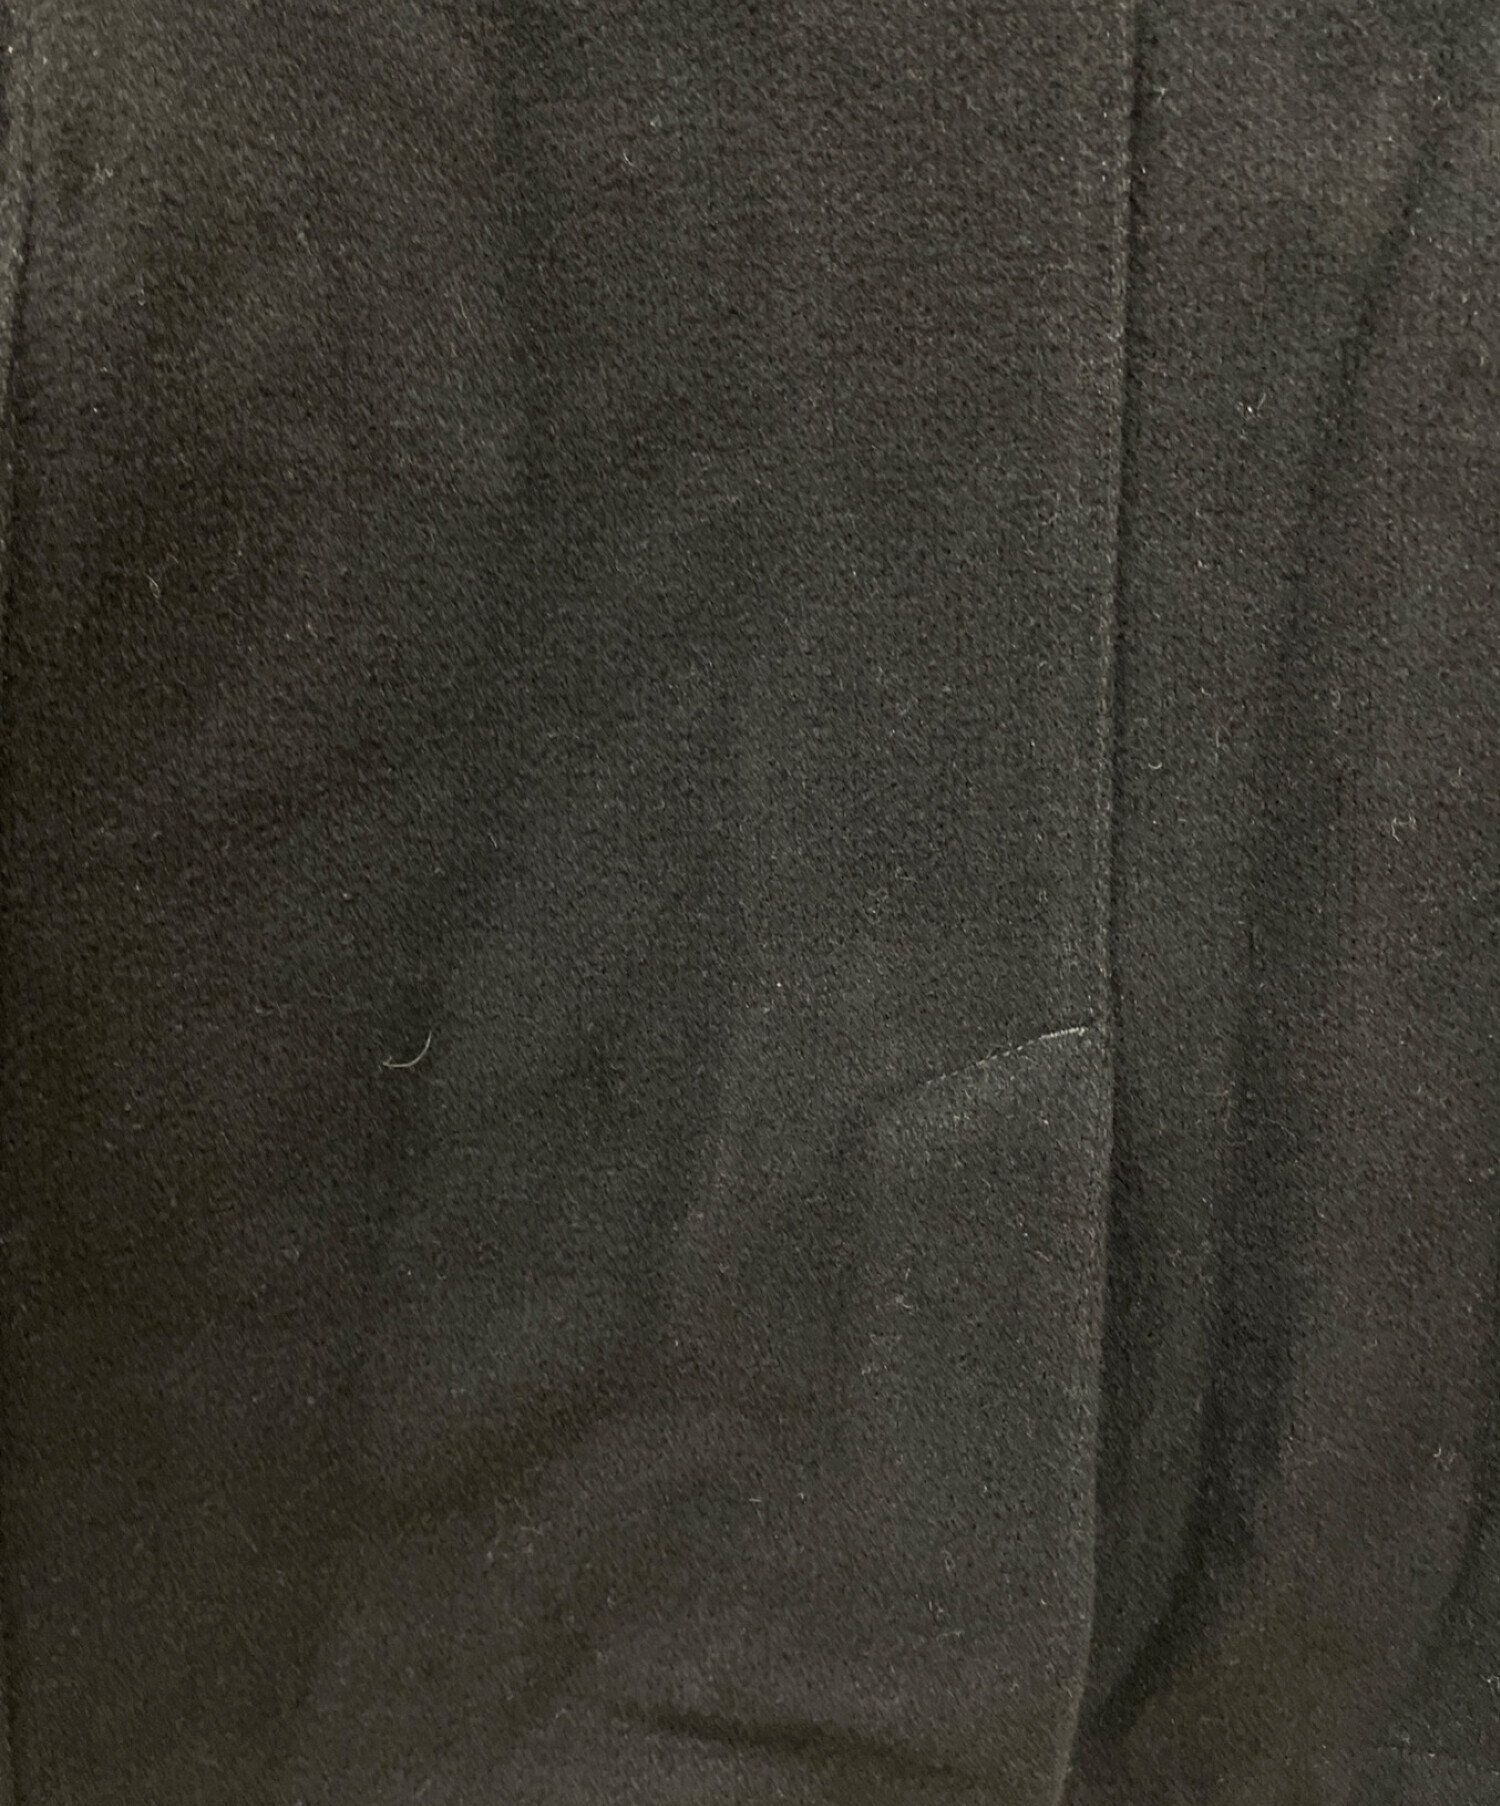 ストーンアイランド × ドーメル ジャケット ウール/ナイロン チェック サイズL ブルゾン ブラック 黒 0112STONE ISLAND メンズ